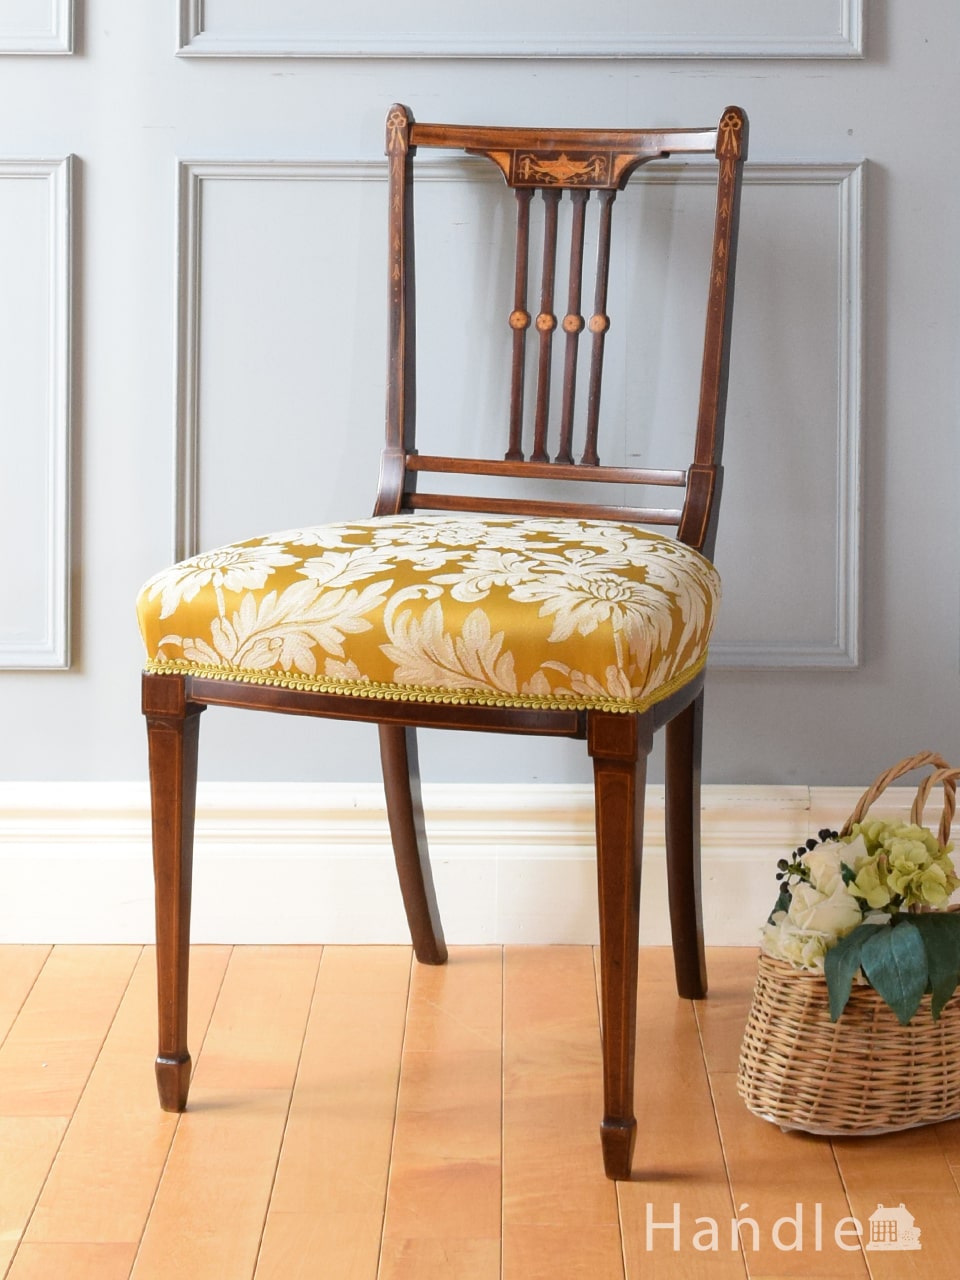 イギリスから届いた美しいアンティークチェア、象嵌細工が施されたローズウッド材の椅子